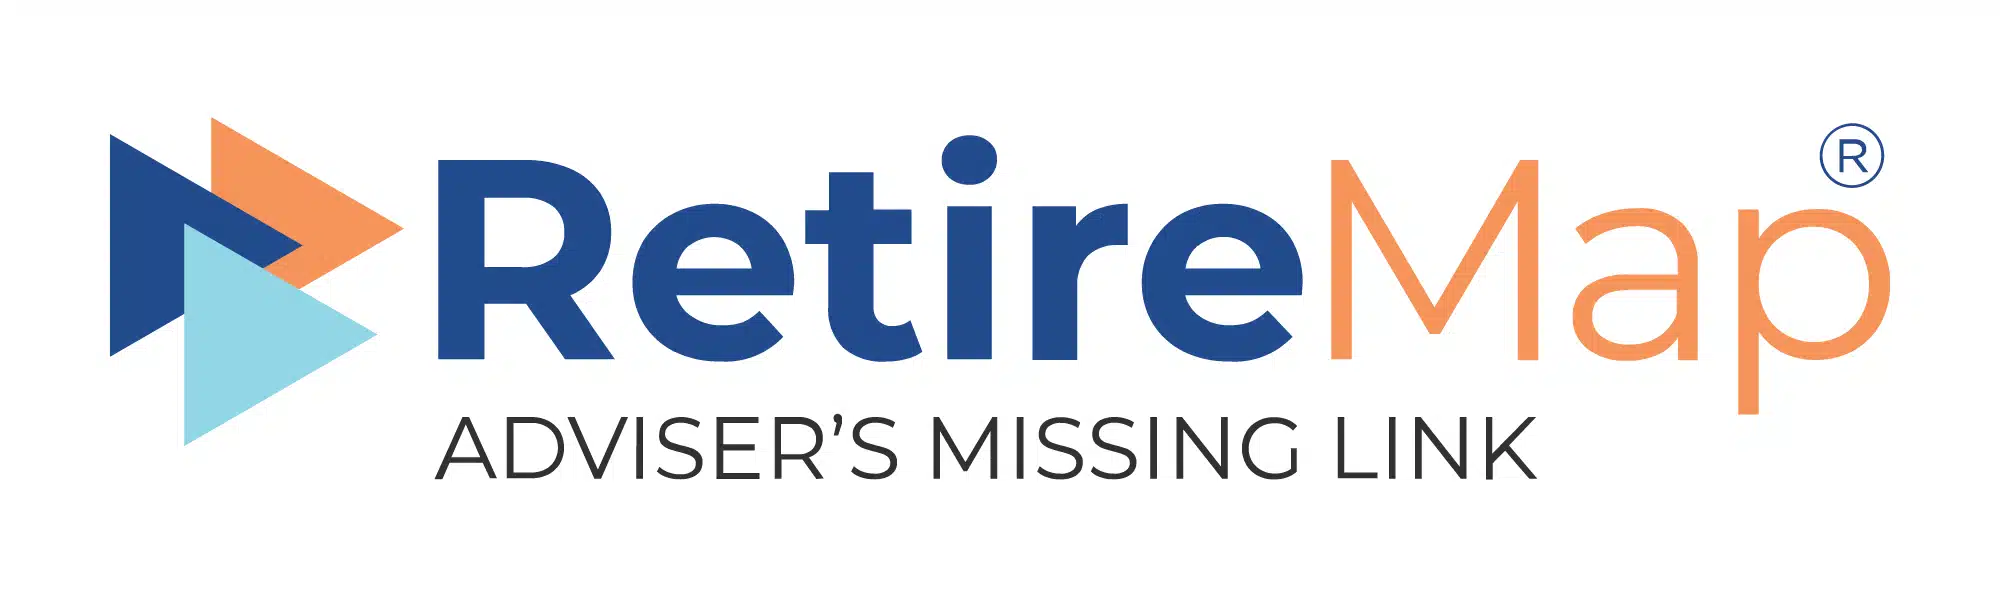 RetireMap logo